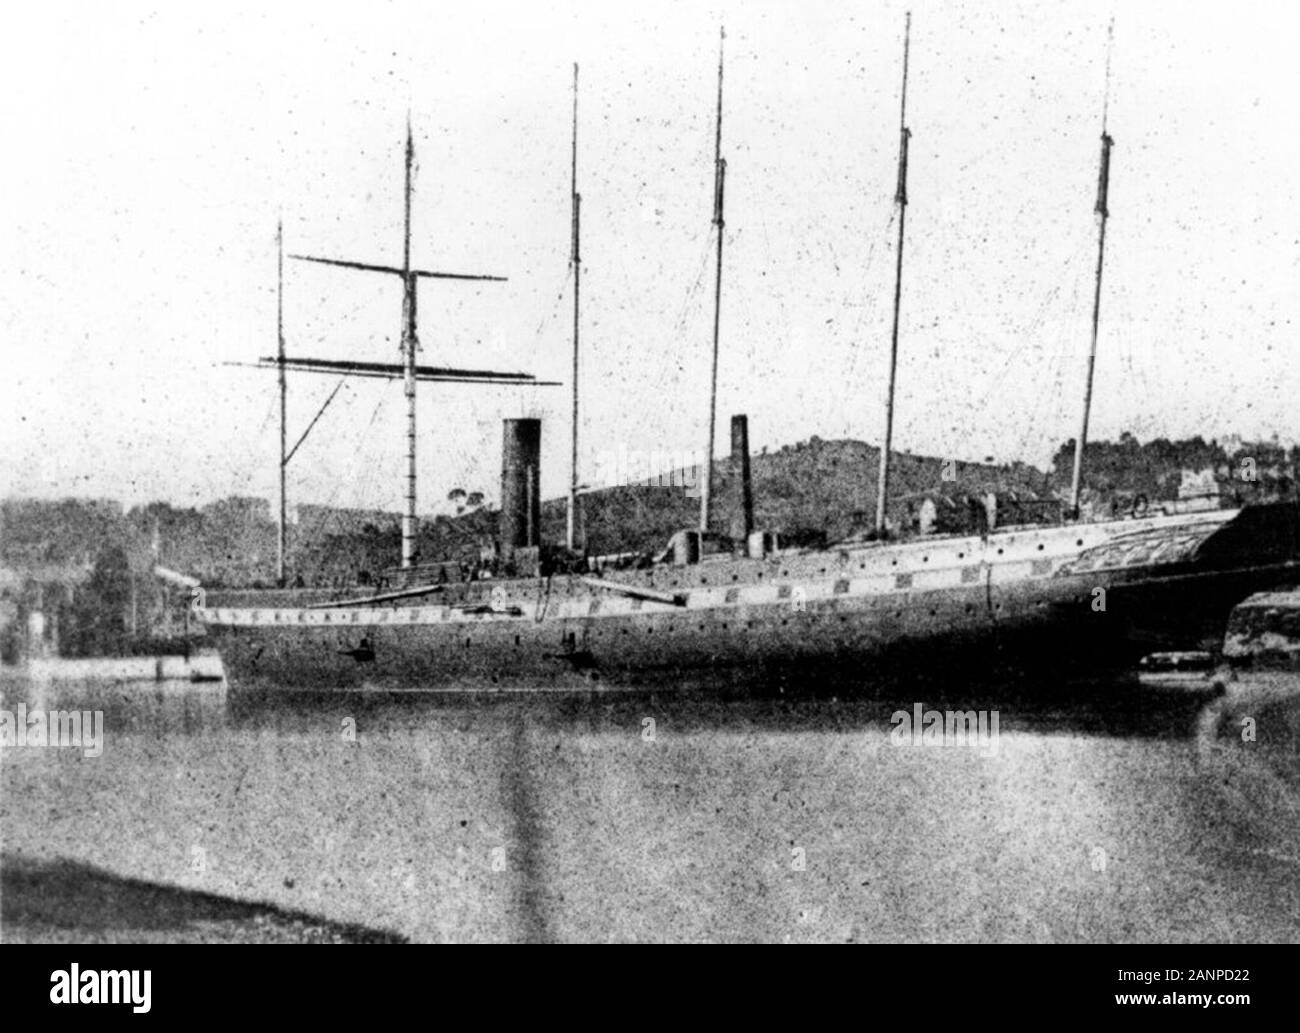 Ausstattung der SS Great Britain in der Bristol Schwimmenden Hafen, April 1844. Dieses historische Fotografie von William Talbot wird geglaubt, die ersten zu sein, die jemals von einem Schiff Stockfoto